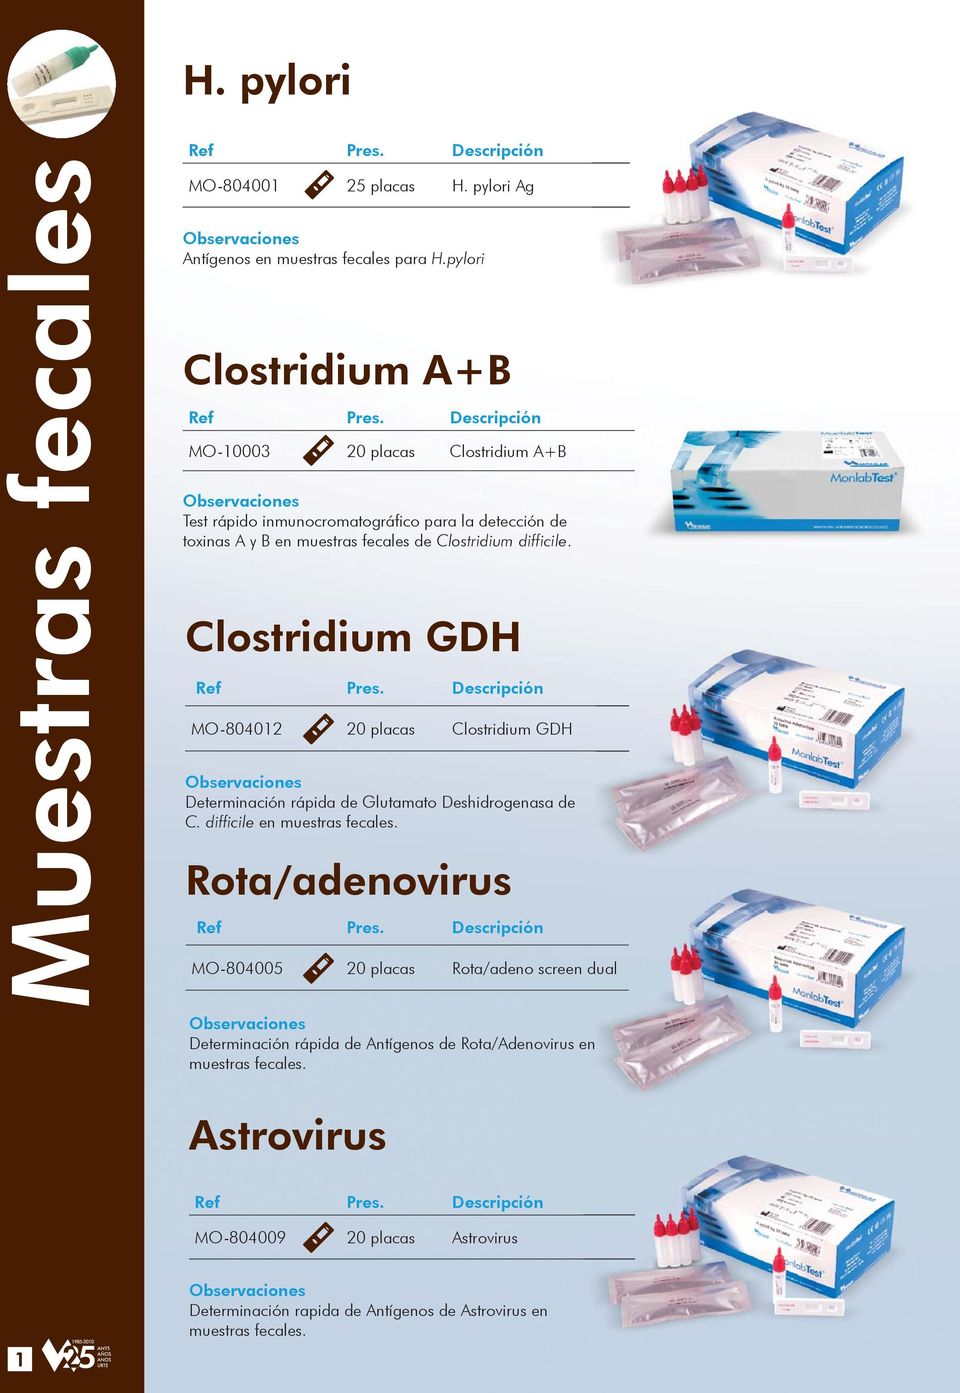 difficile. Clostridium GDH MO-804012 20 placas Clostridium GDH Determinación rápida de Glutamato Deshidrogenasa de C. difficile en muestras fecales.